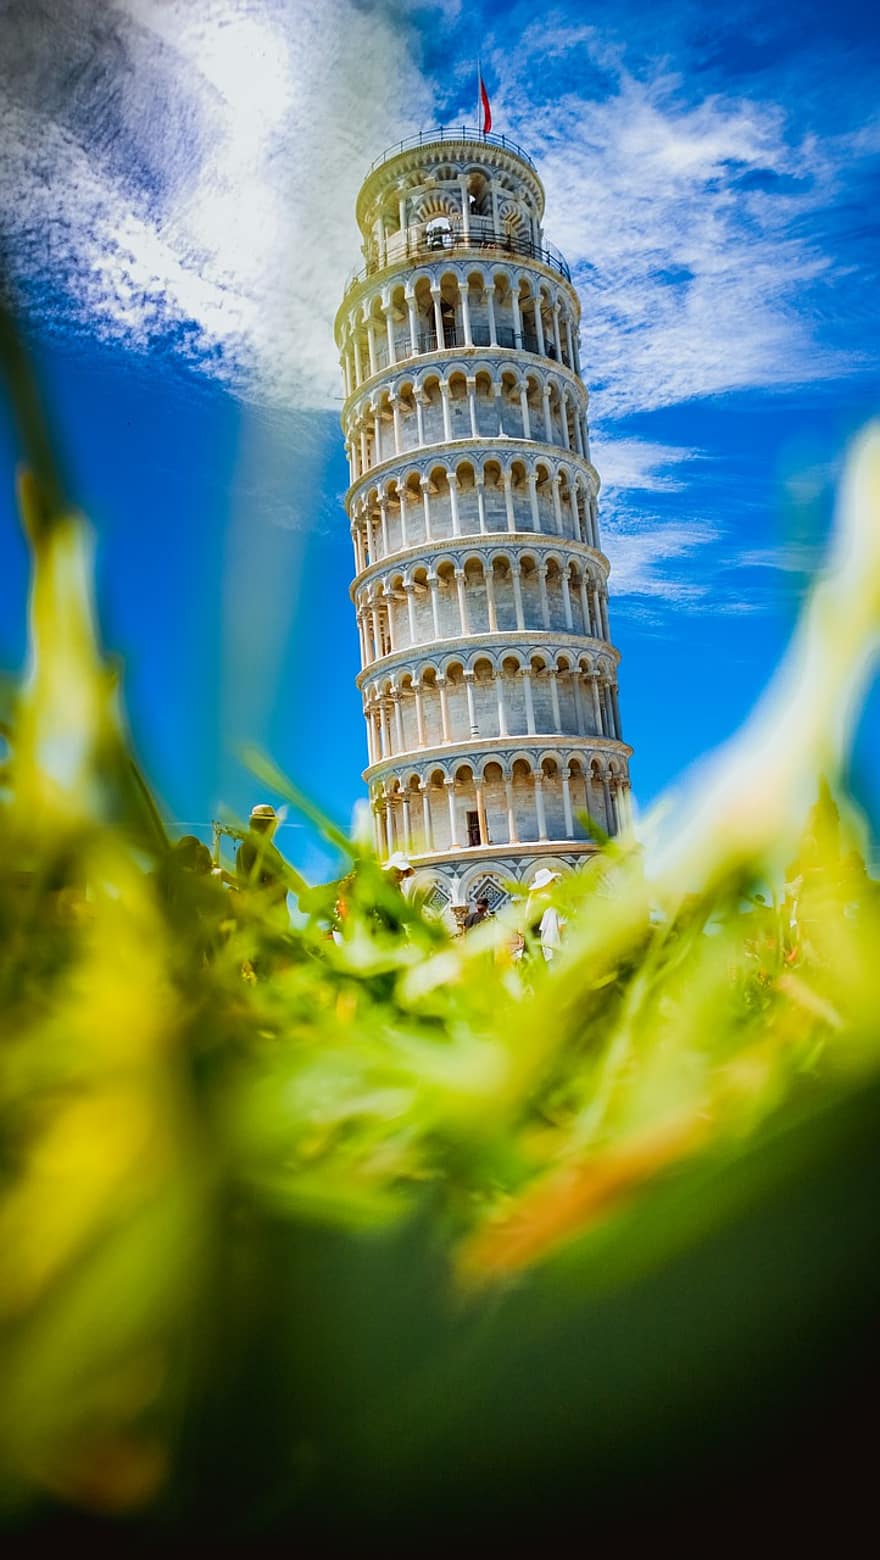 torony, hajló, Pisa, tájékozódási pont, épület, utazás, idegenforgalom, emlékmű, Európa, templom, történelem